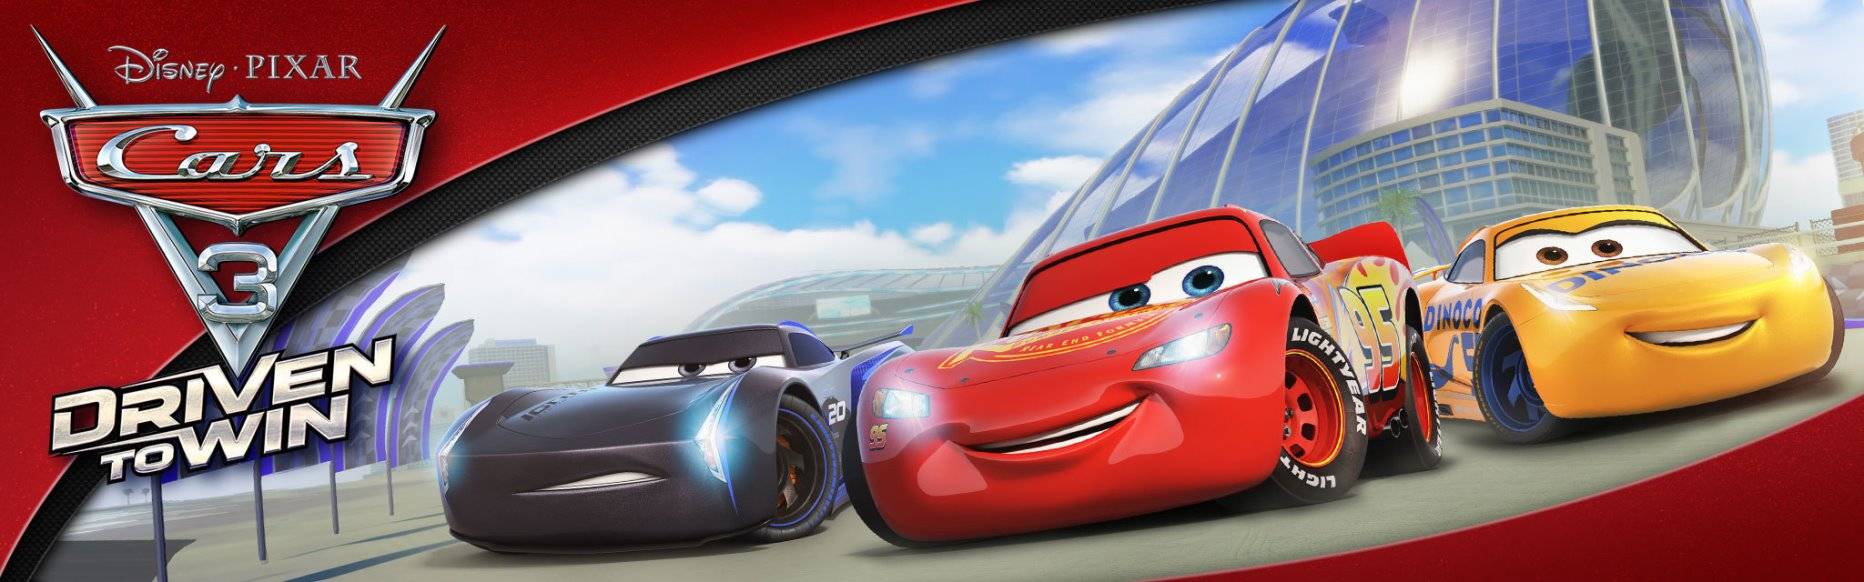 Në Kino ABC vjen filmi i animuar “CARS 3”